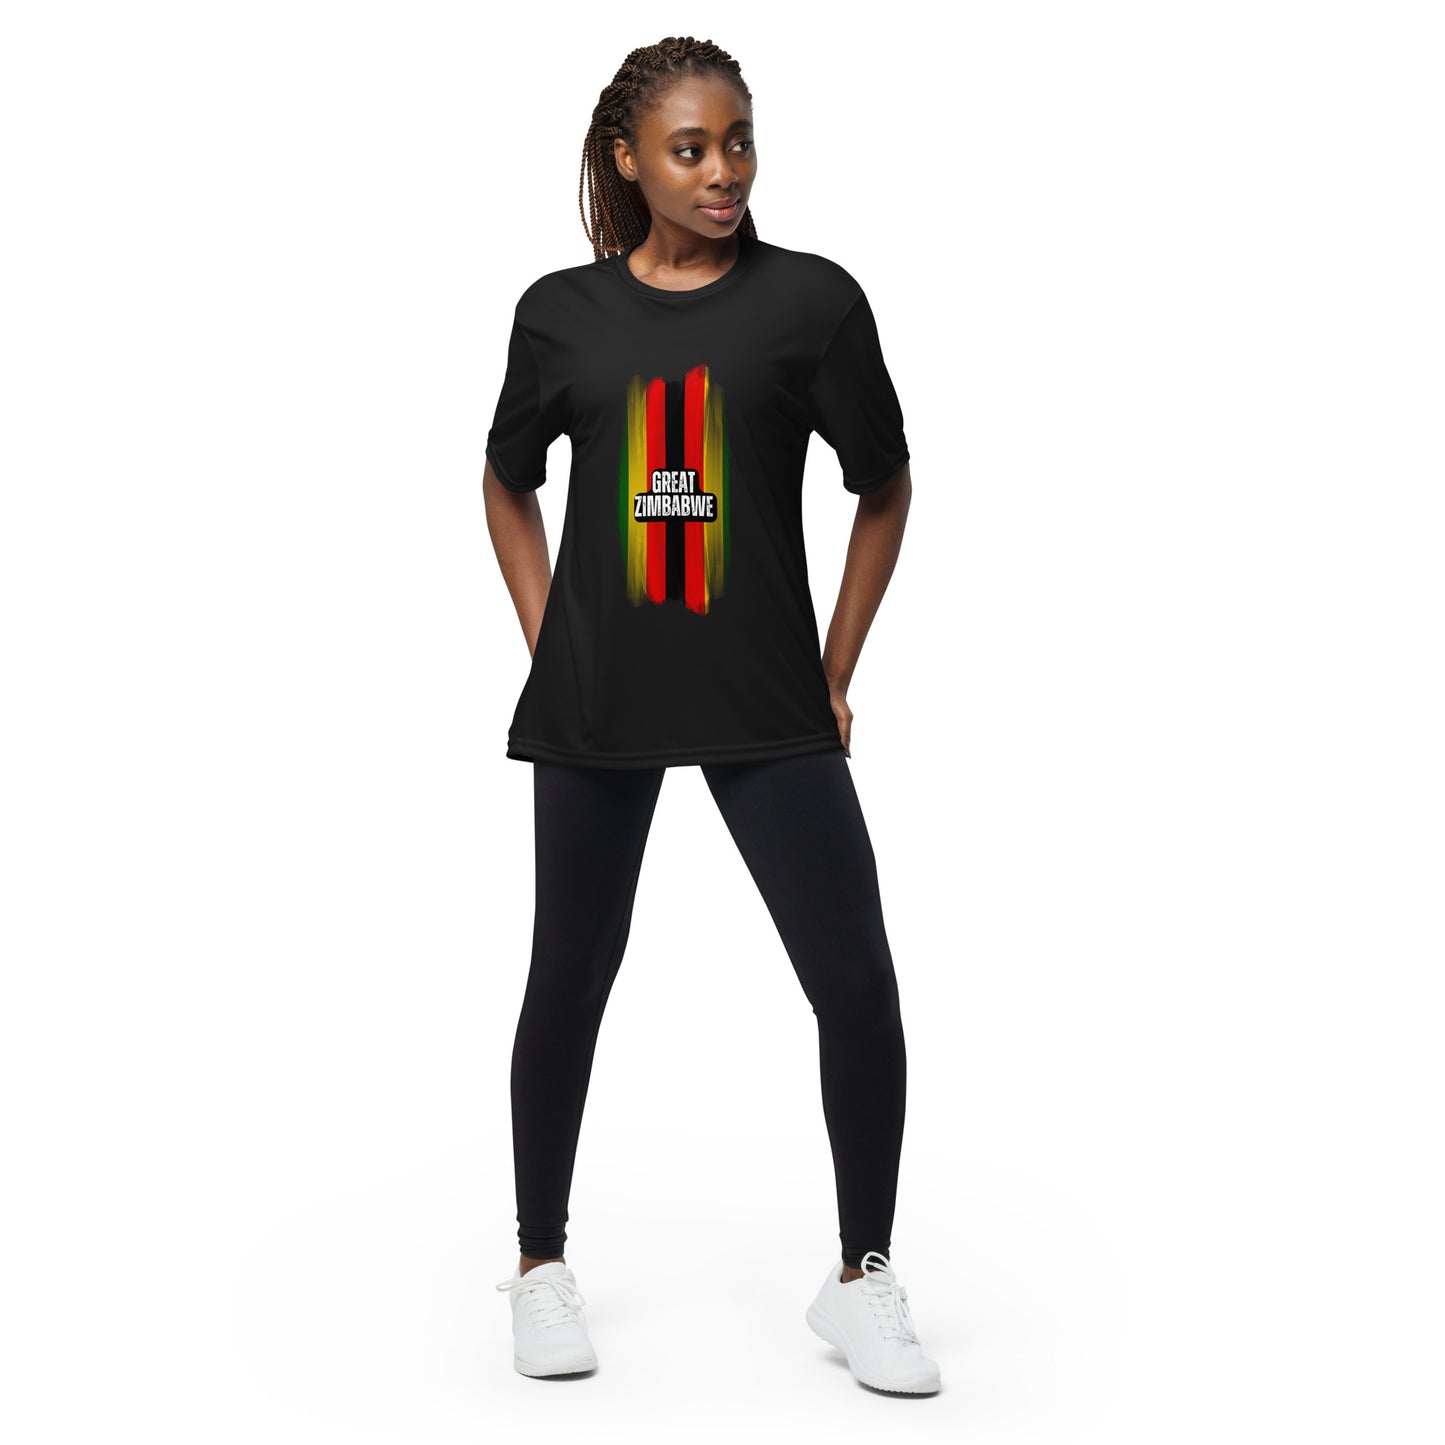 Unisex performance crew neck Great Zimbabwe t-shirt